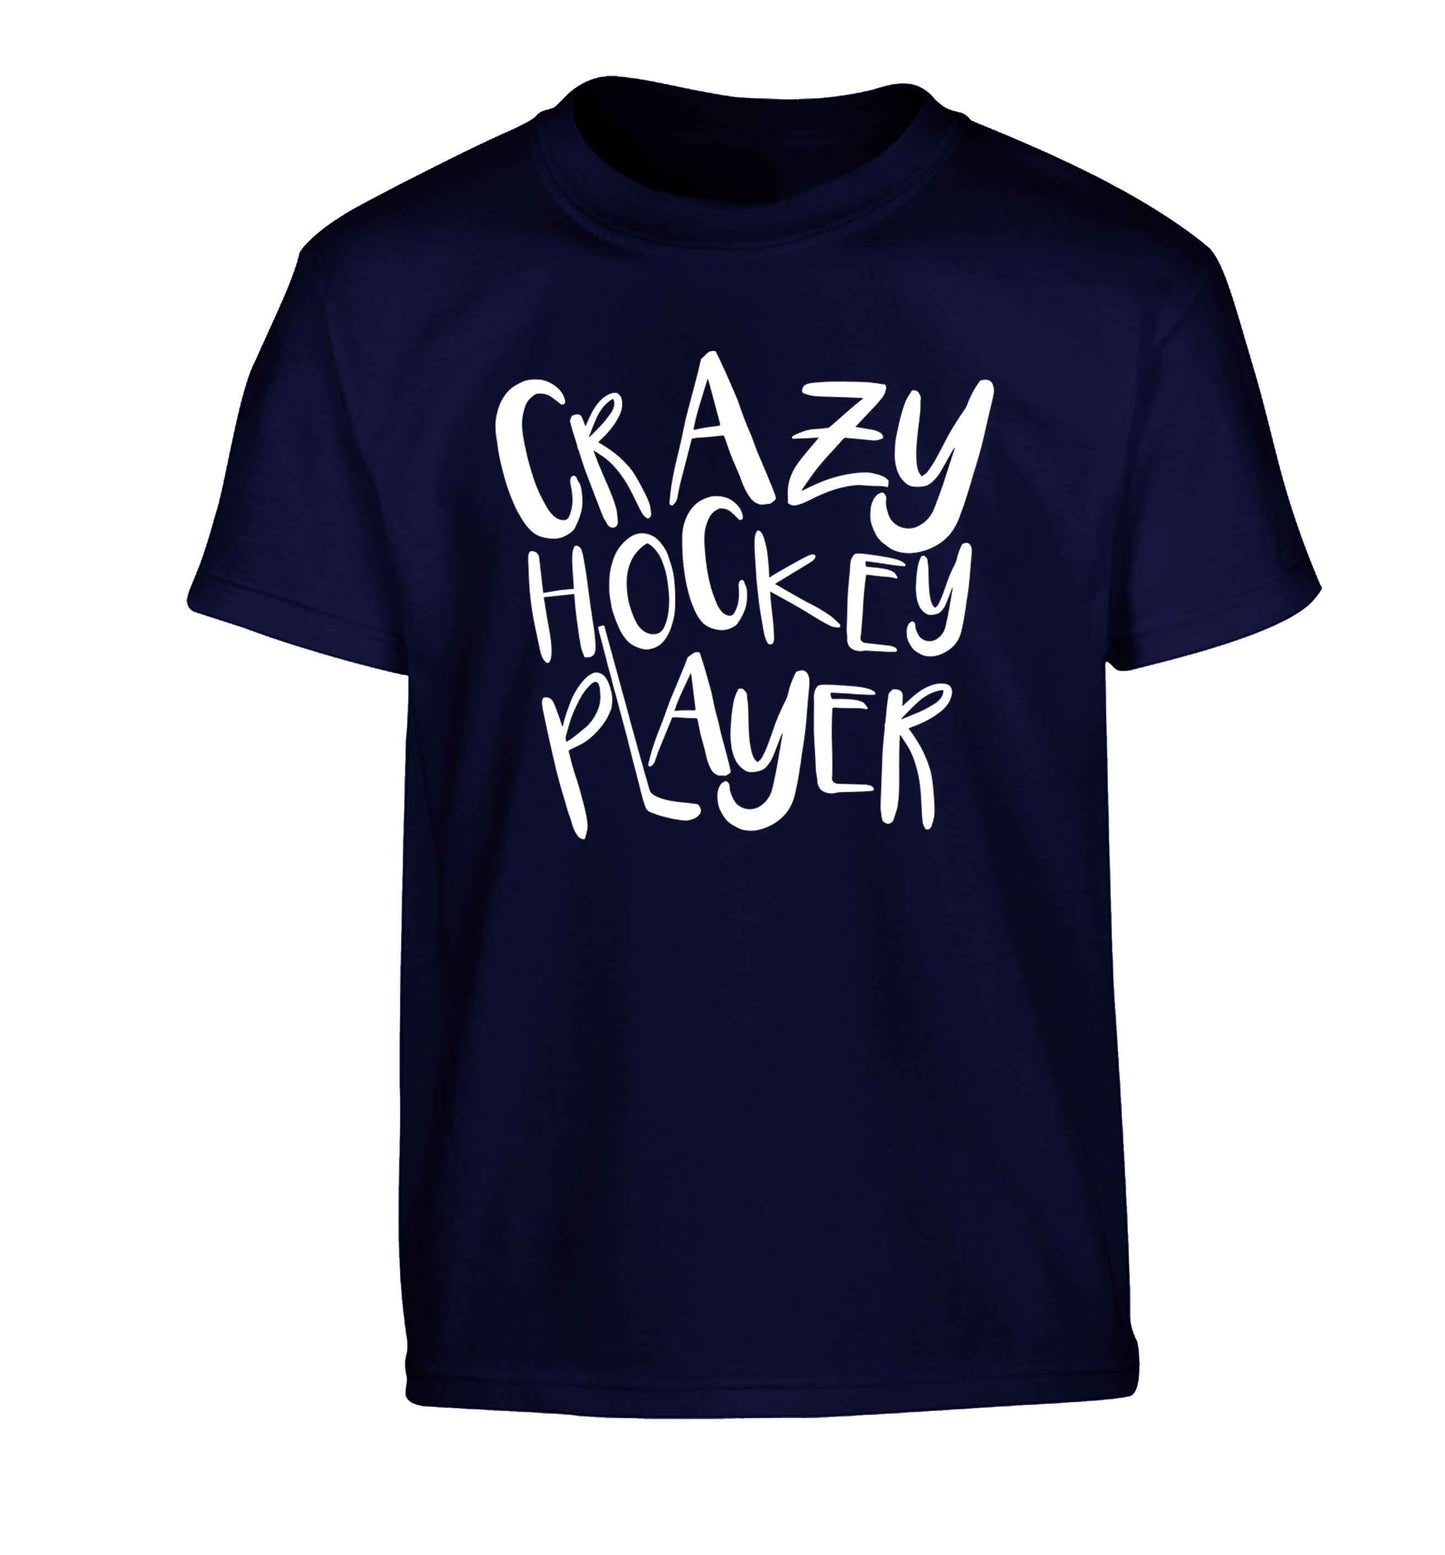 Crazy hockey player Children's navy Tshirt 12-13 Years